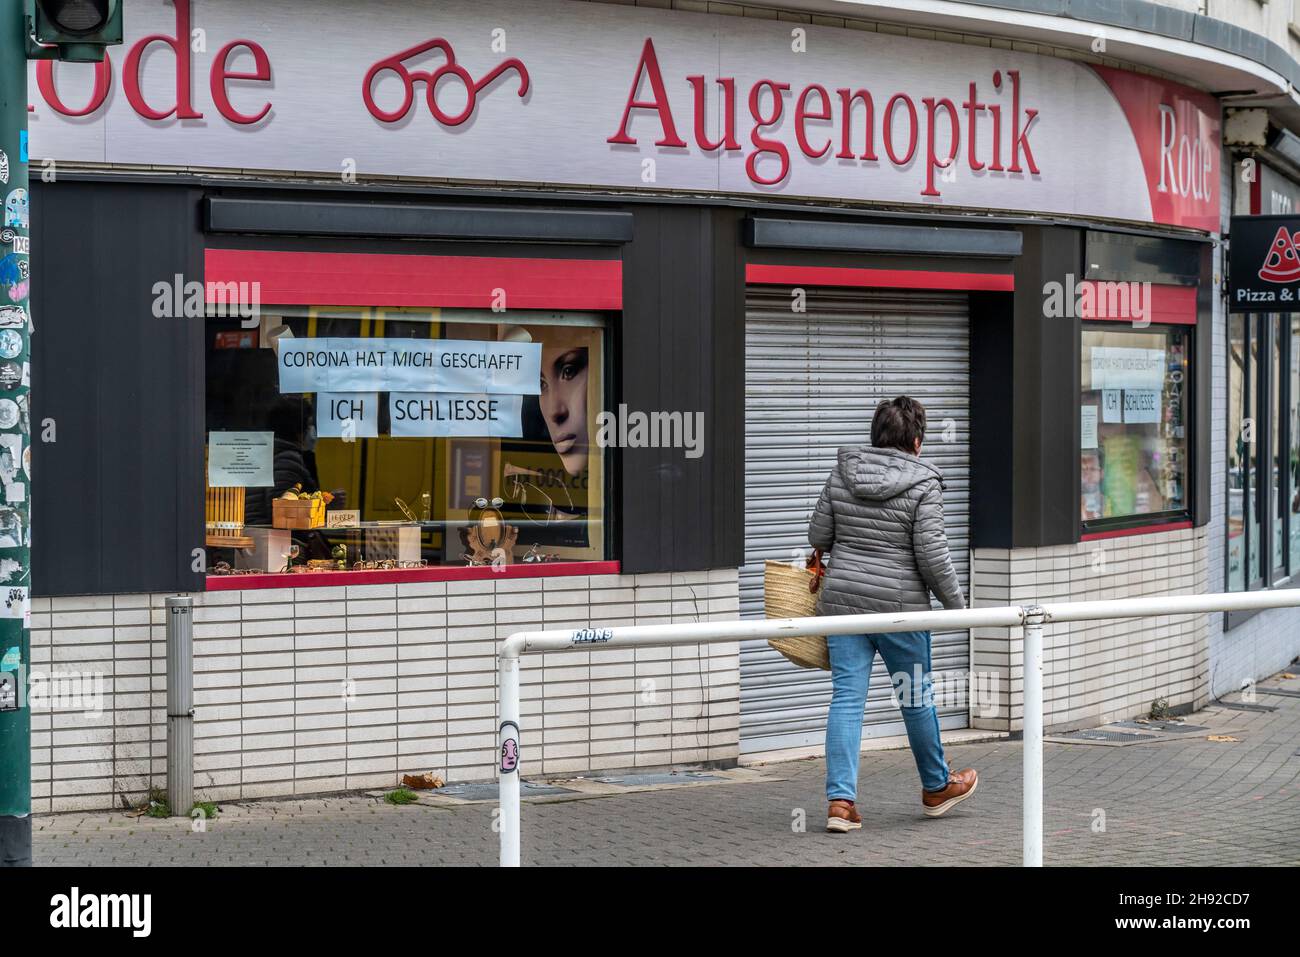 Fermeture d'entreprise en raison des conséquences économiques de la crise de Corona, l'opticien Rode, dans le Südviertel à Essen, ferme après onze ans, vente Banque D'Images